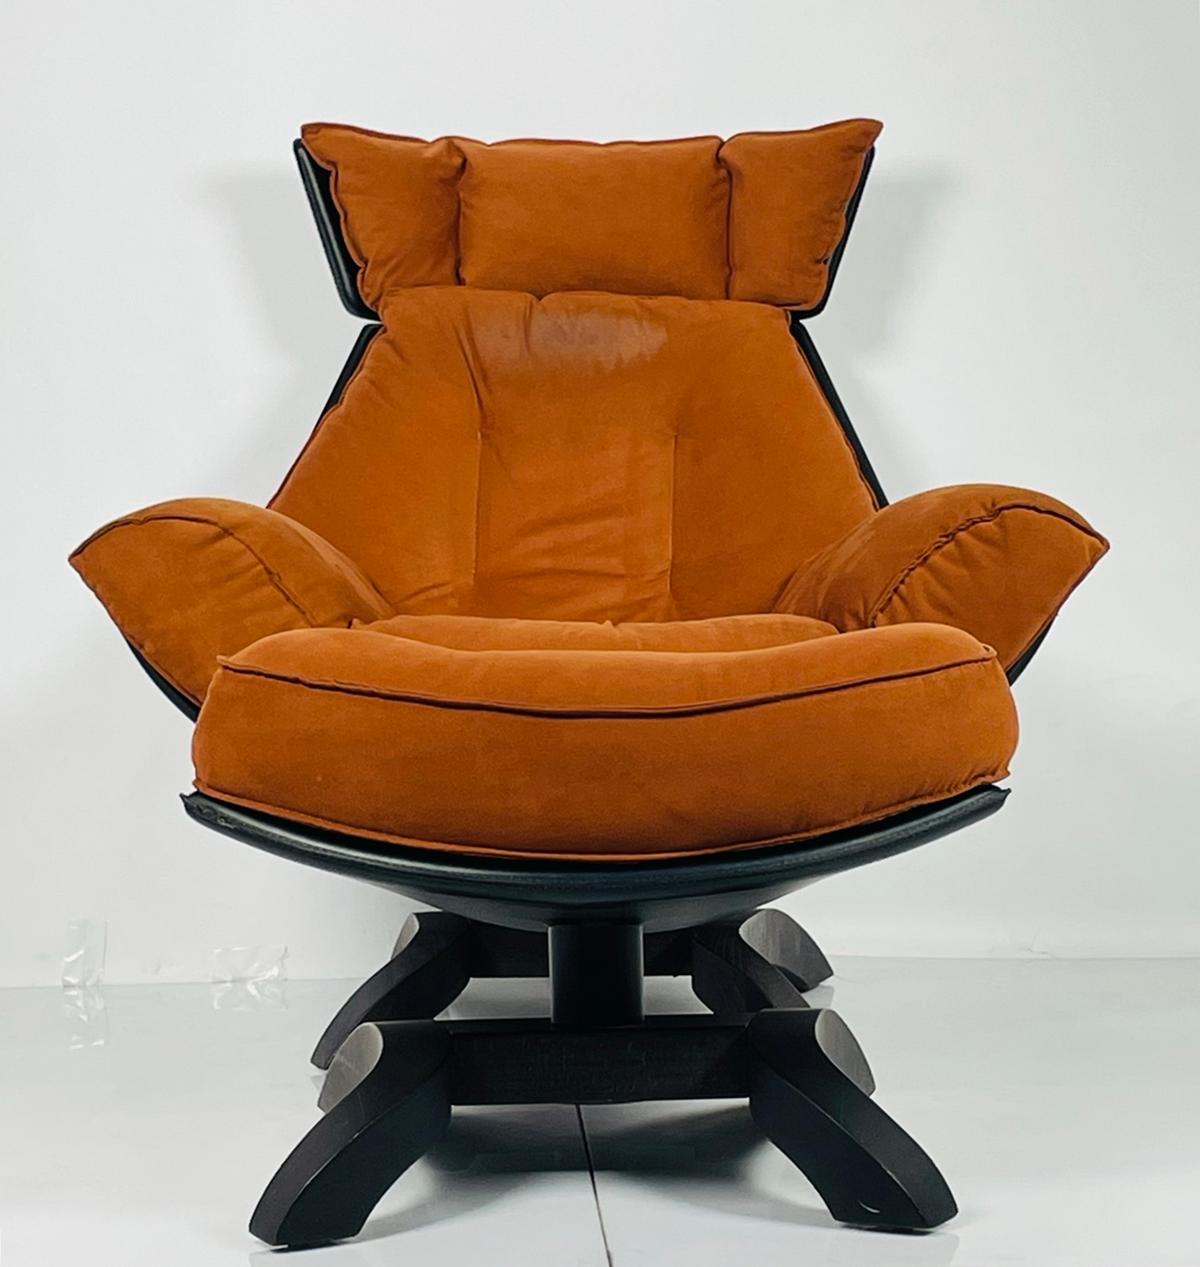 Wir stellen den exquisiten Vintage Chair & Ottoman vor, der in Italien vom renommierten Designer Giorgio Saporiti entworfen wurde. Dieses luxuriöse Möbelset strahlt Raffinesse und zeitlose Eleganz aus und ist damit die perfekte Ergänzung für jede